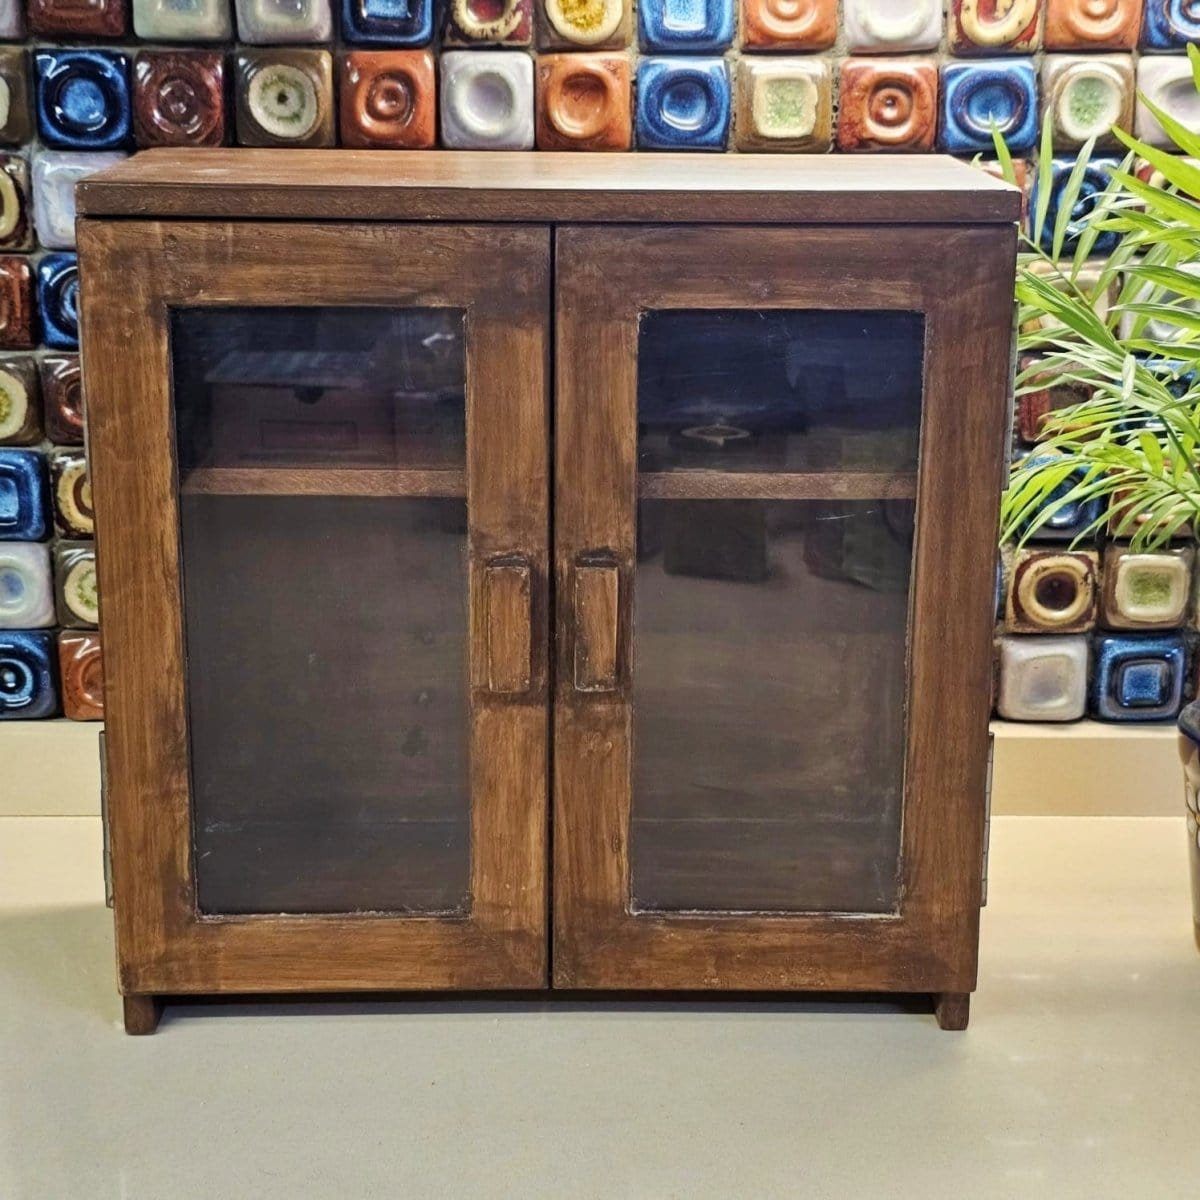 Barish Bread Box (2 Door) Best Home Decor Handcrafted